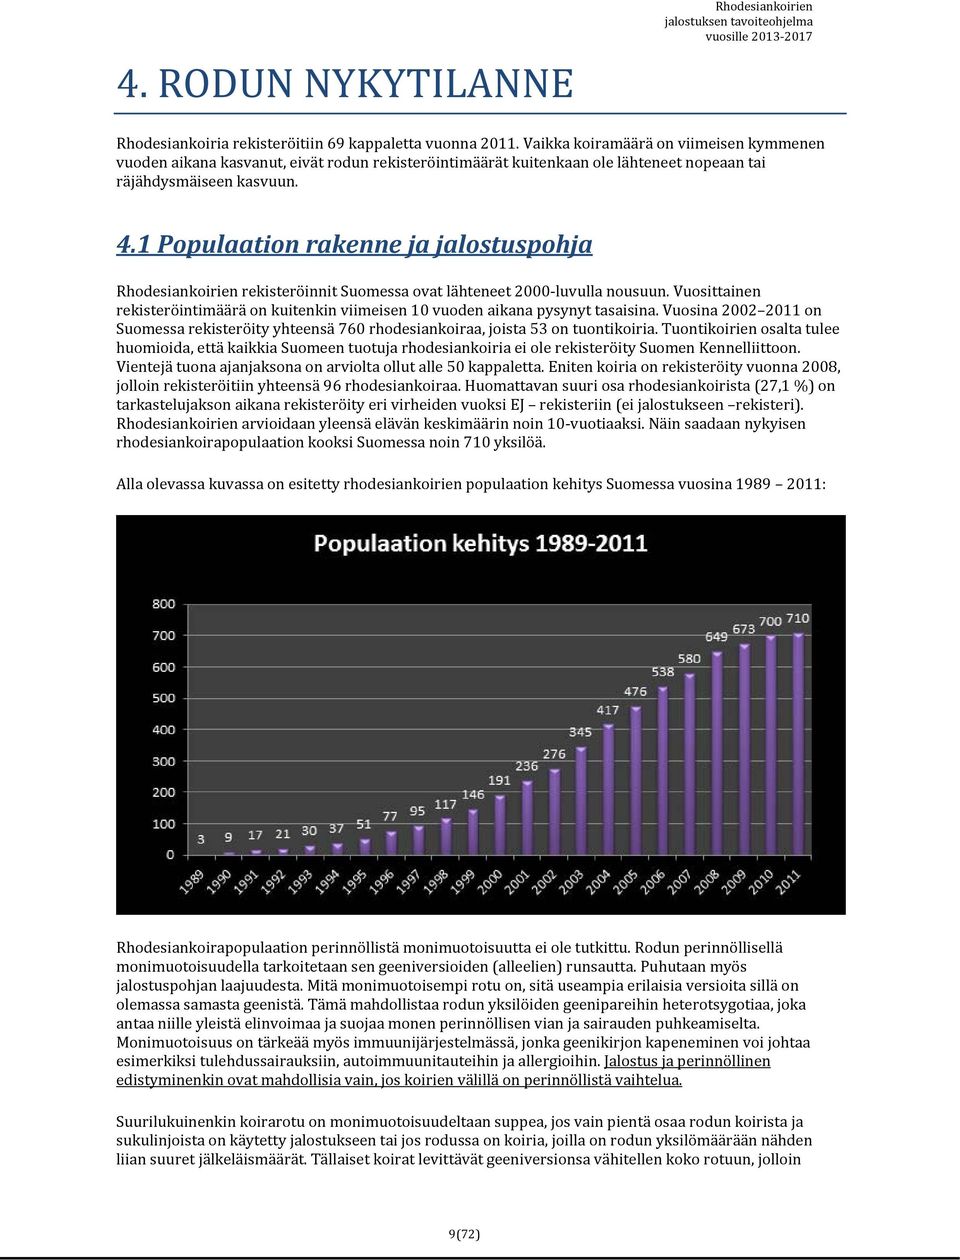 1 Populaation rakenne ja jalostuspohja Rhodesiankoirien rekisteröinnit Suomessa ovat lähteneet 2000 luvulla nousuun.